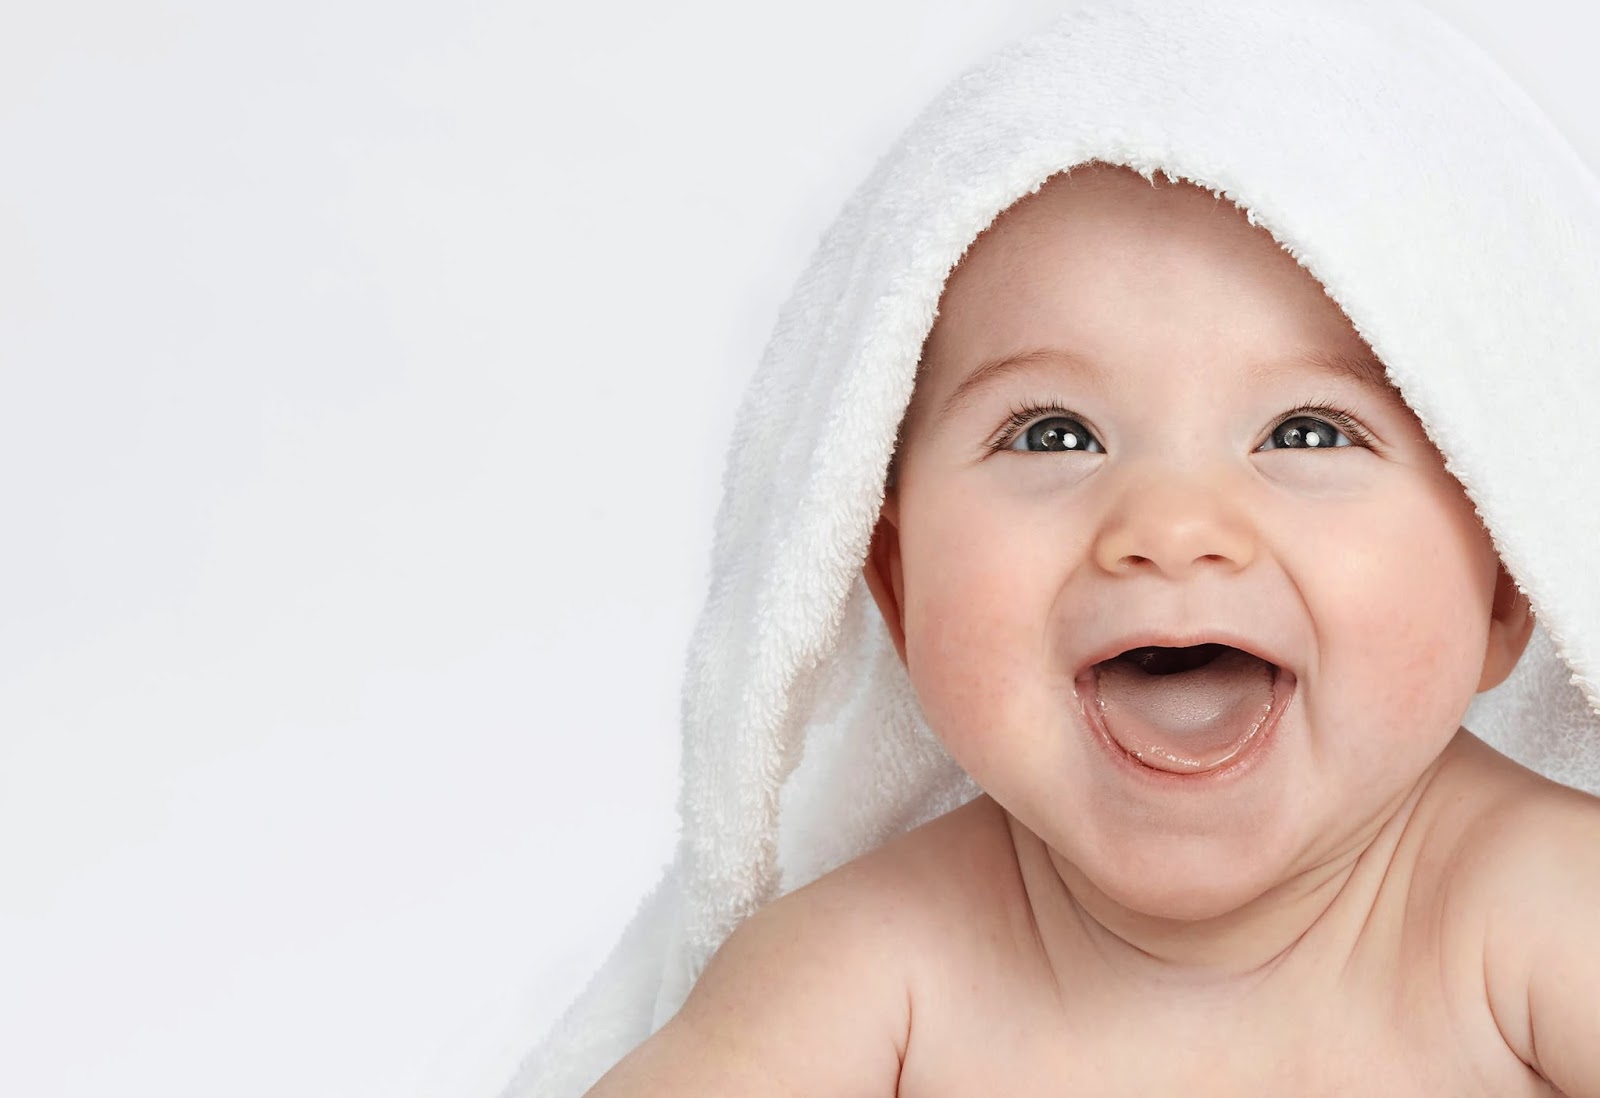 Cute-Smiling-Baby-Under-The-Towel.jpg